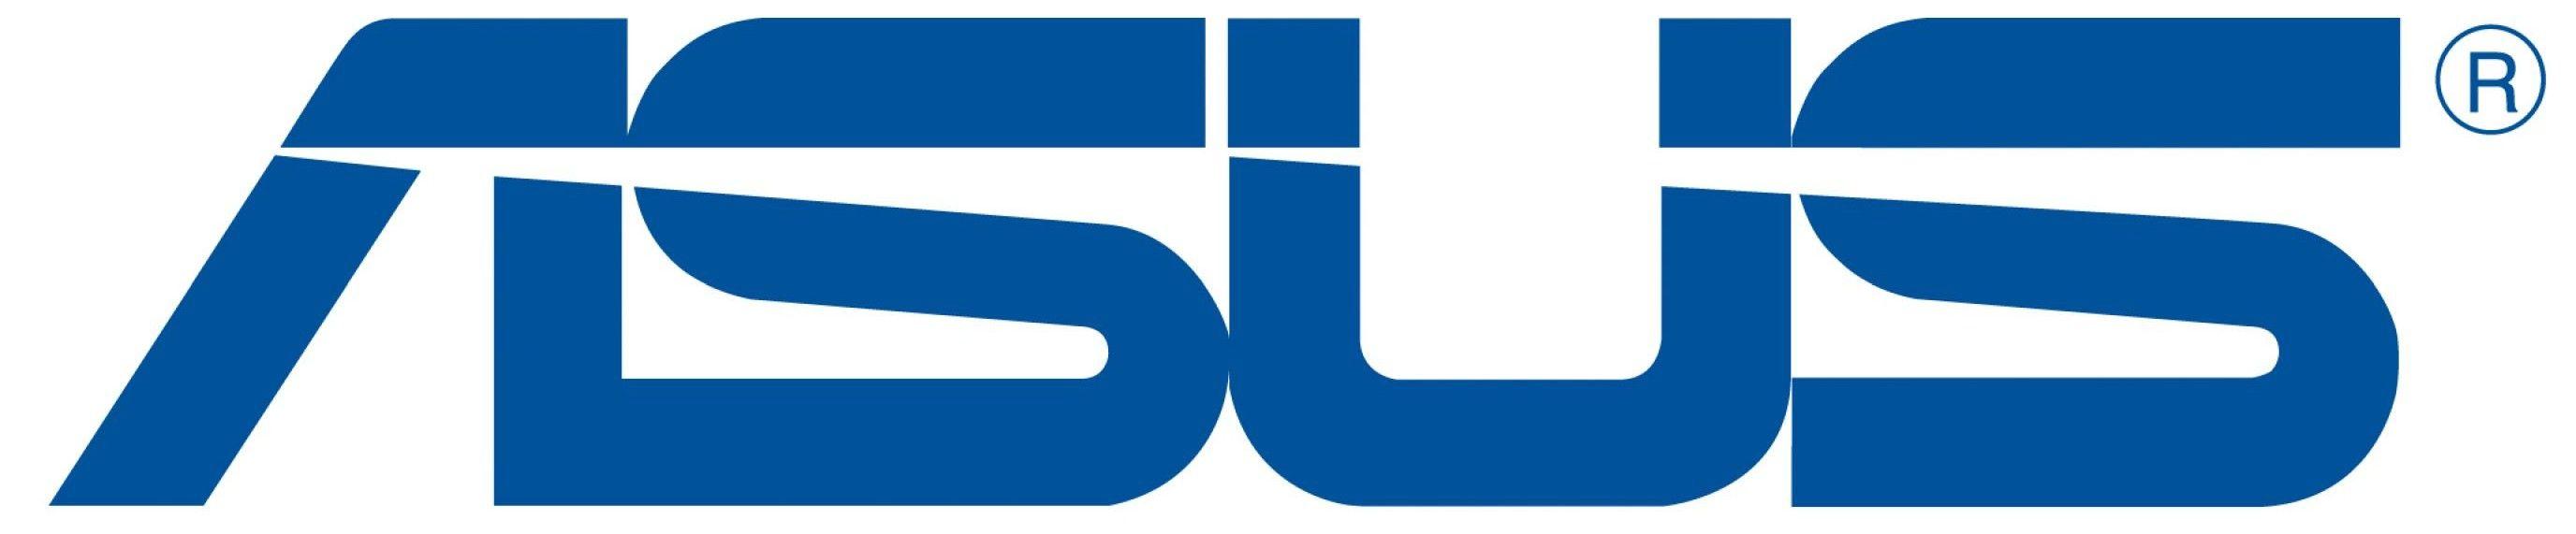 ASUSTeK Logo - Asustek Computer Logo | LOGOSURFER.COM